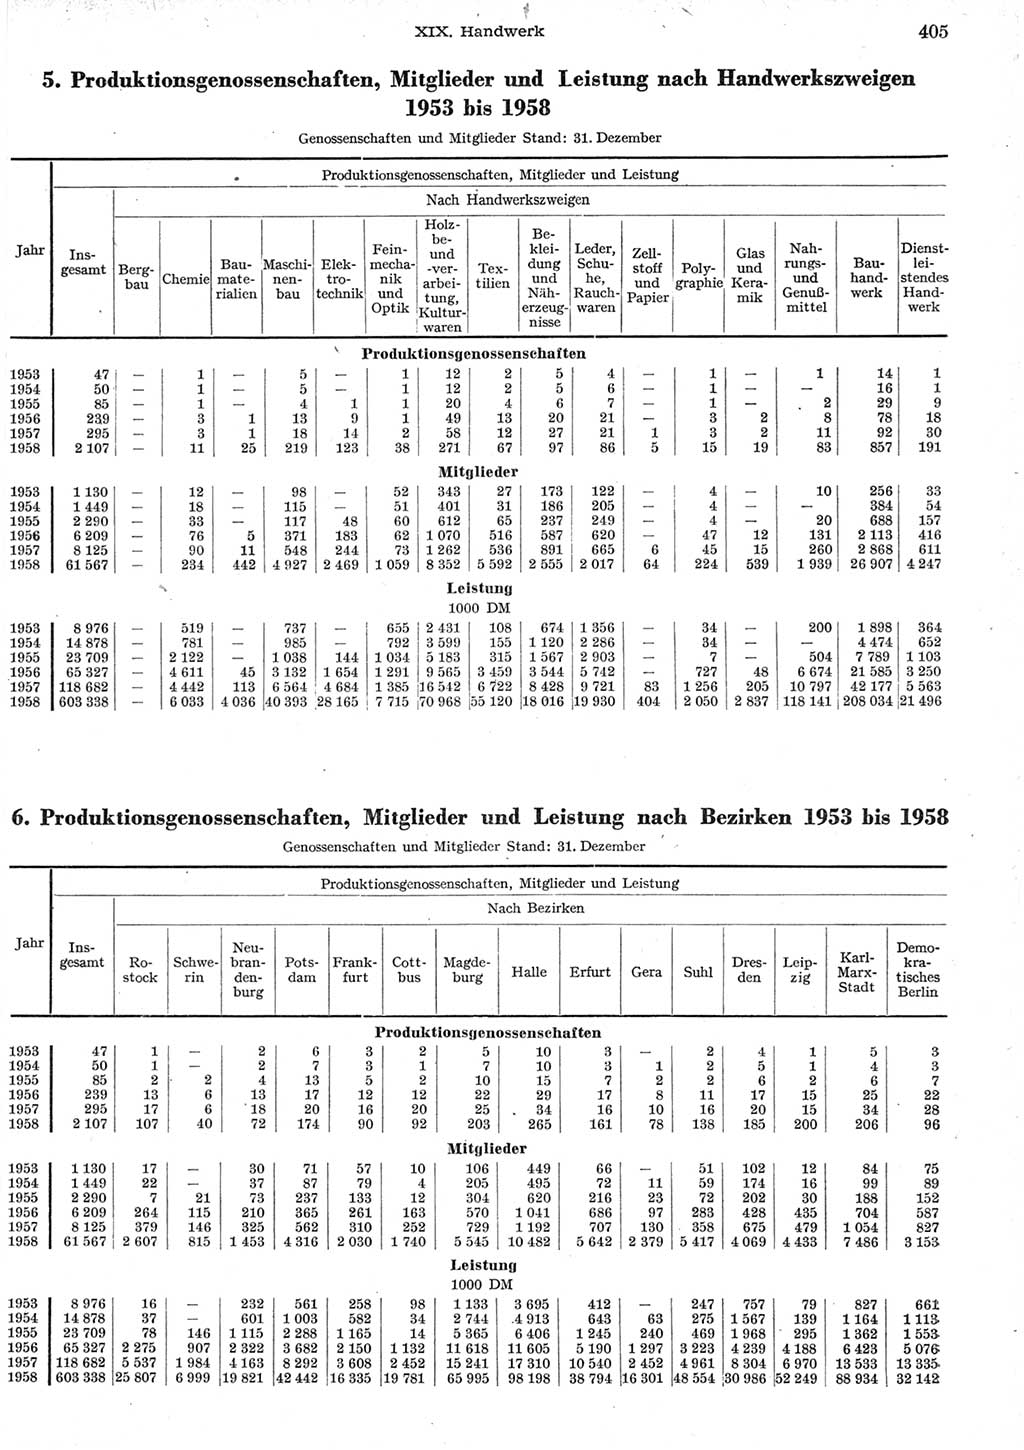 Statistisches Jahrbuch der Deutschen Demokratischen Republik (DDR) 1958, Seite 405 (Stat. Jb. DDR 1958, S. 405)